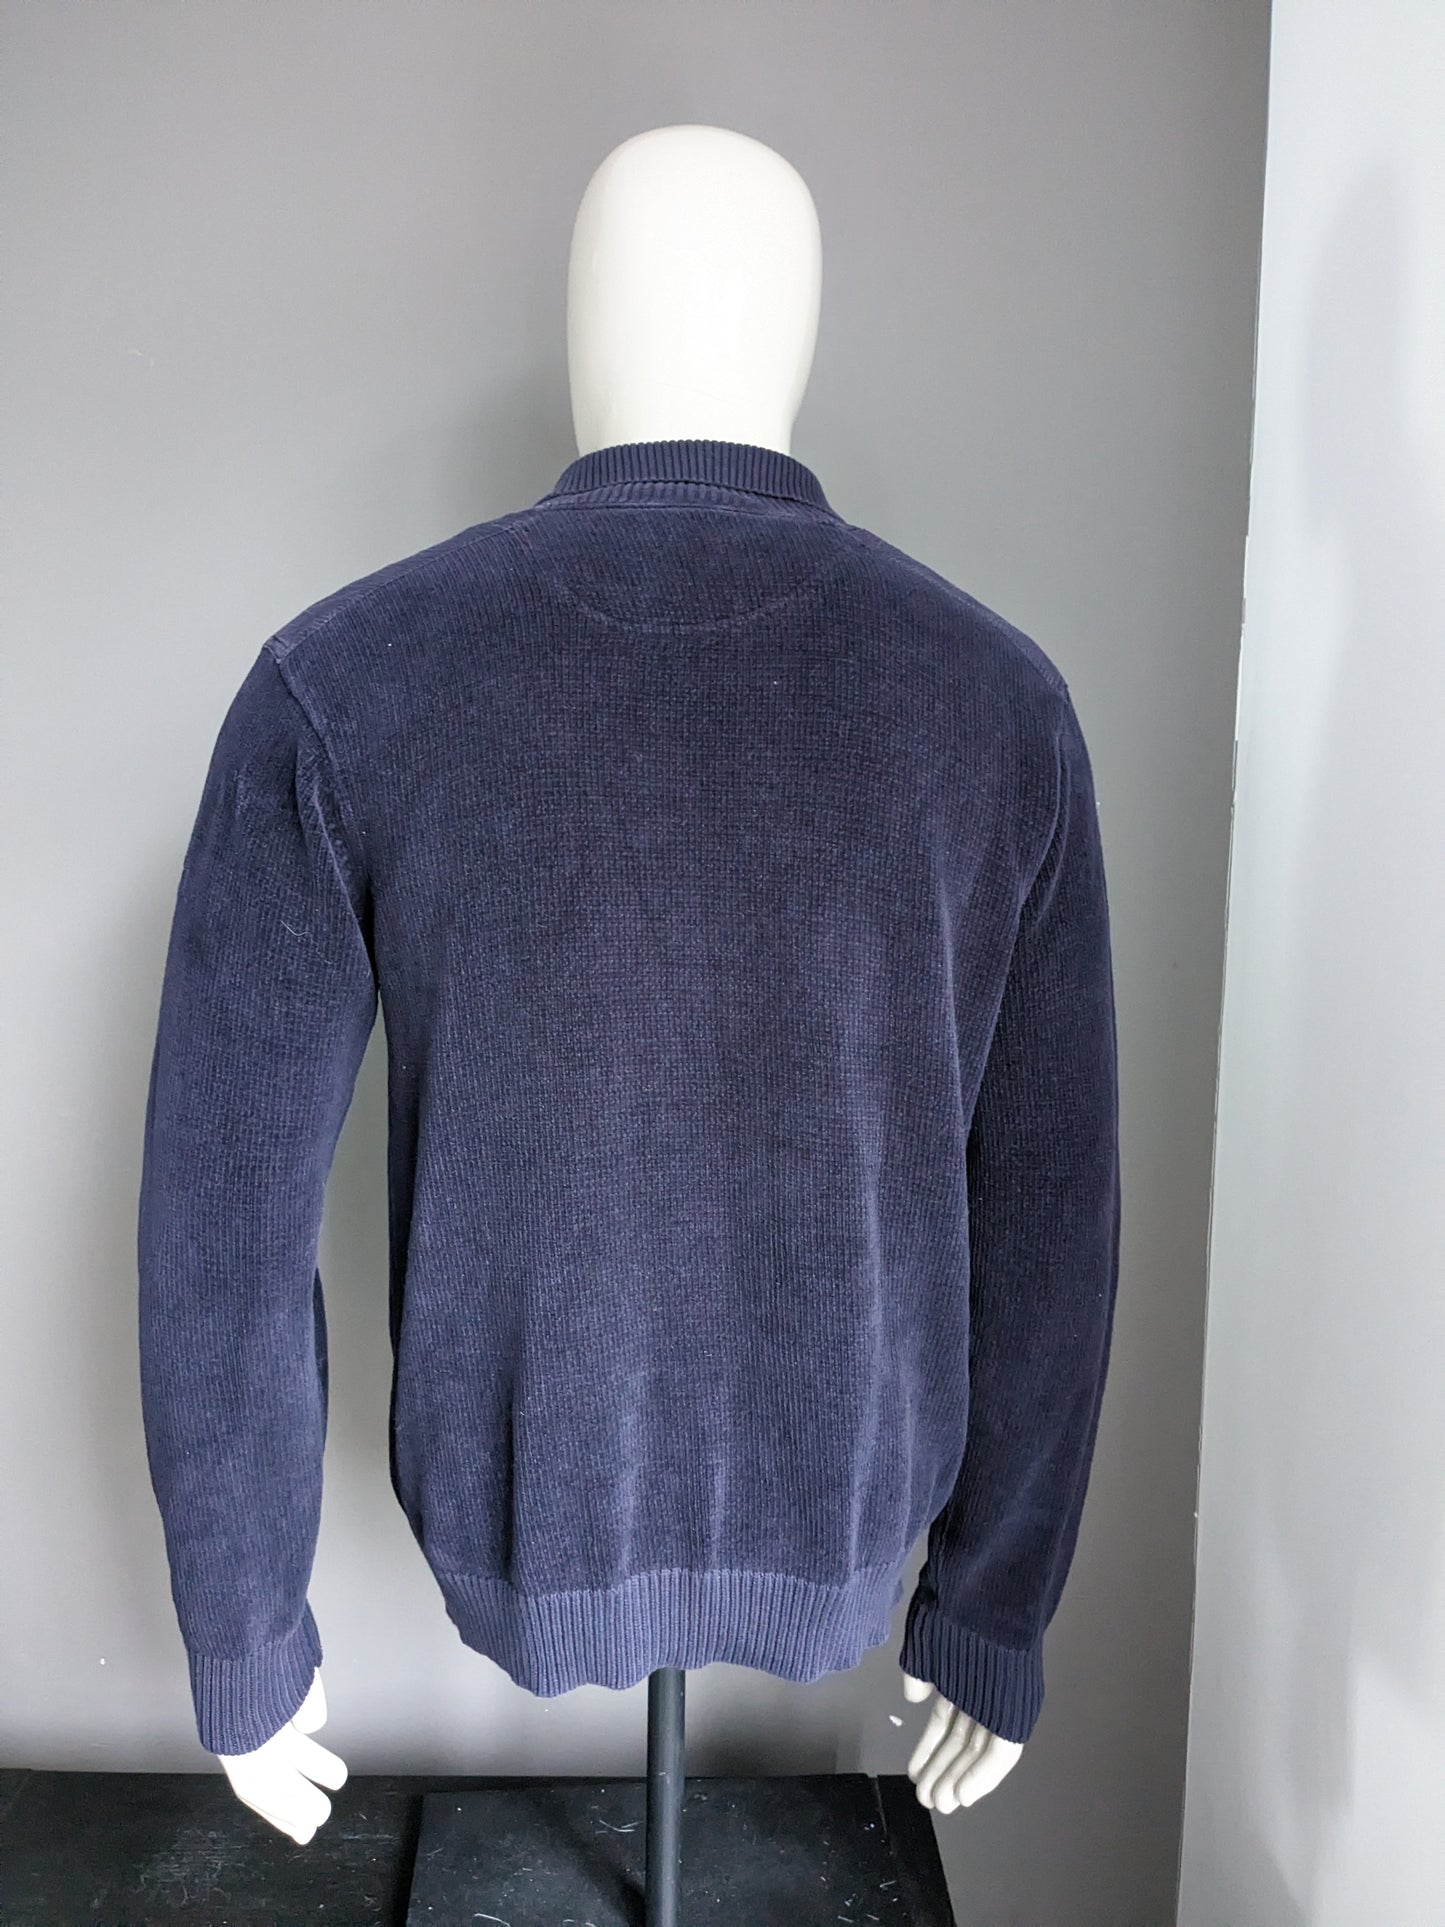 Sweater de polo de flecha. Color azul oscuro. Talla L.